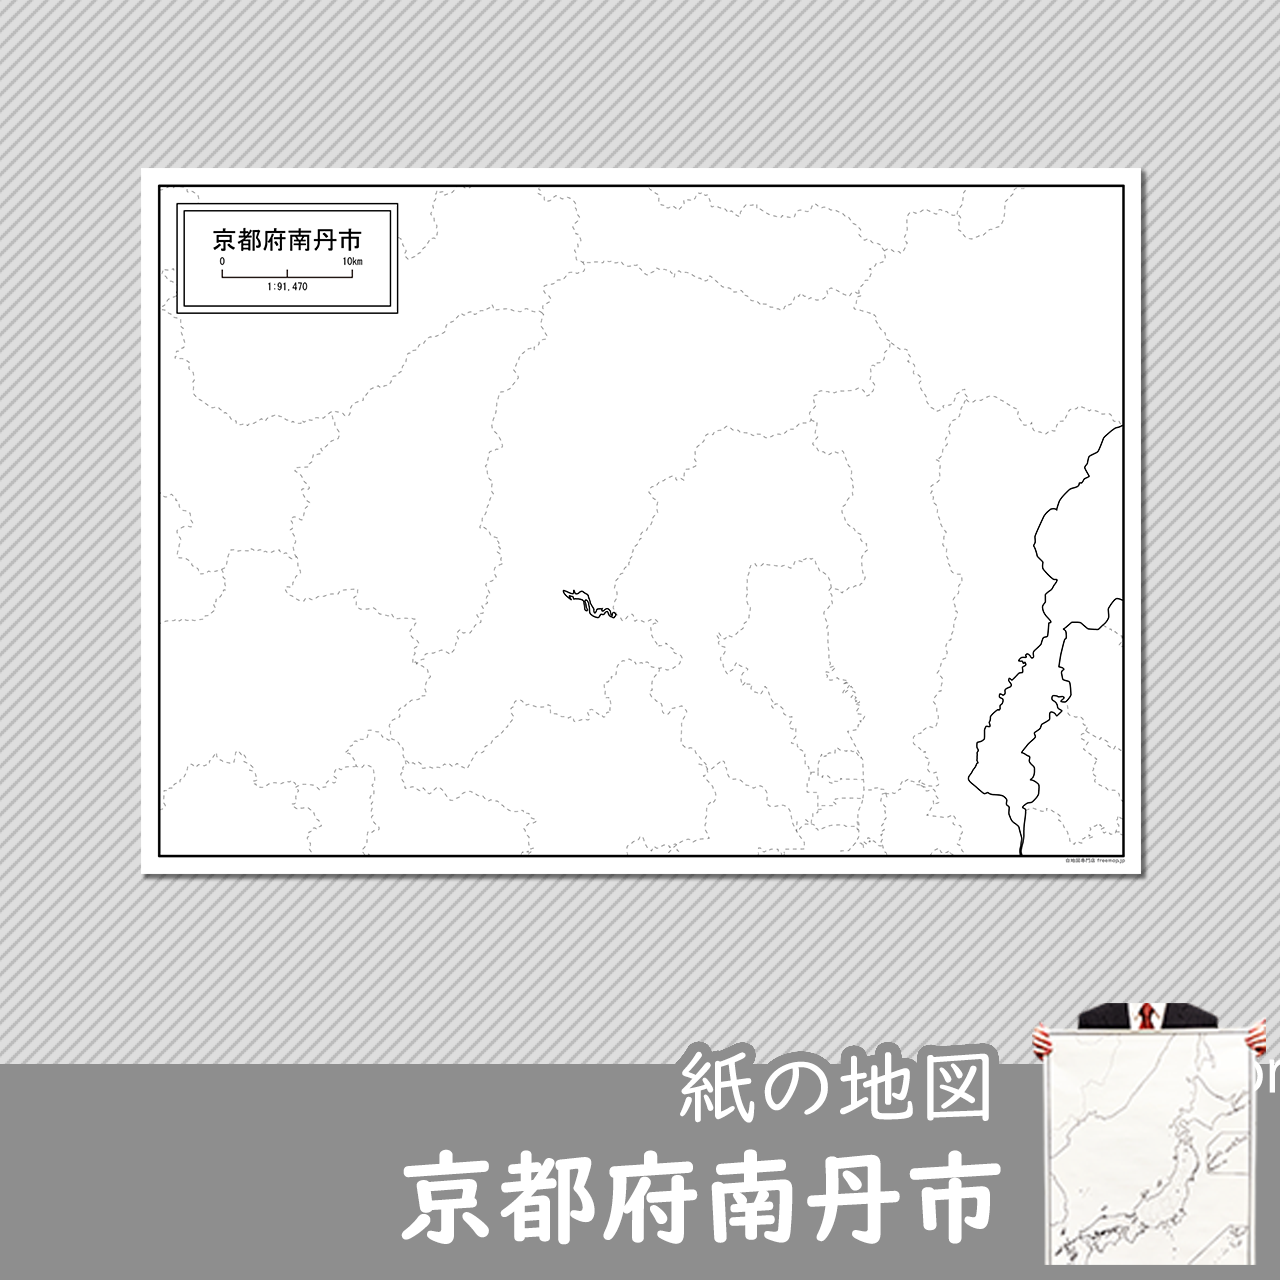 南丹市の紙の白地図のサムネイル